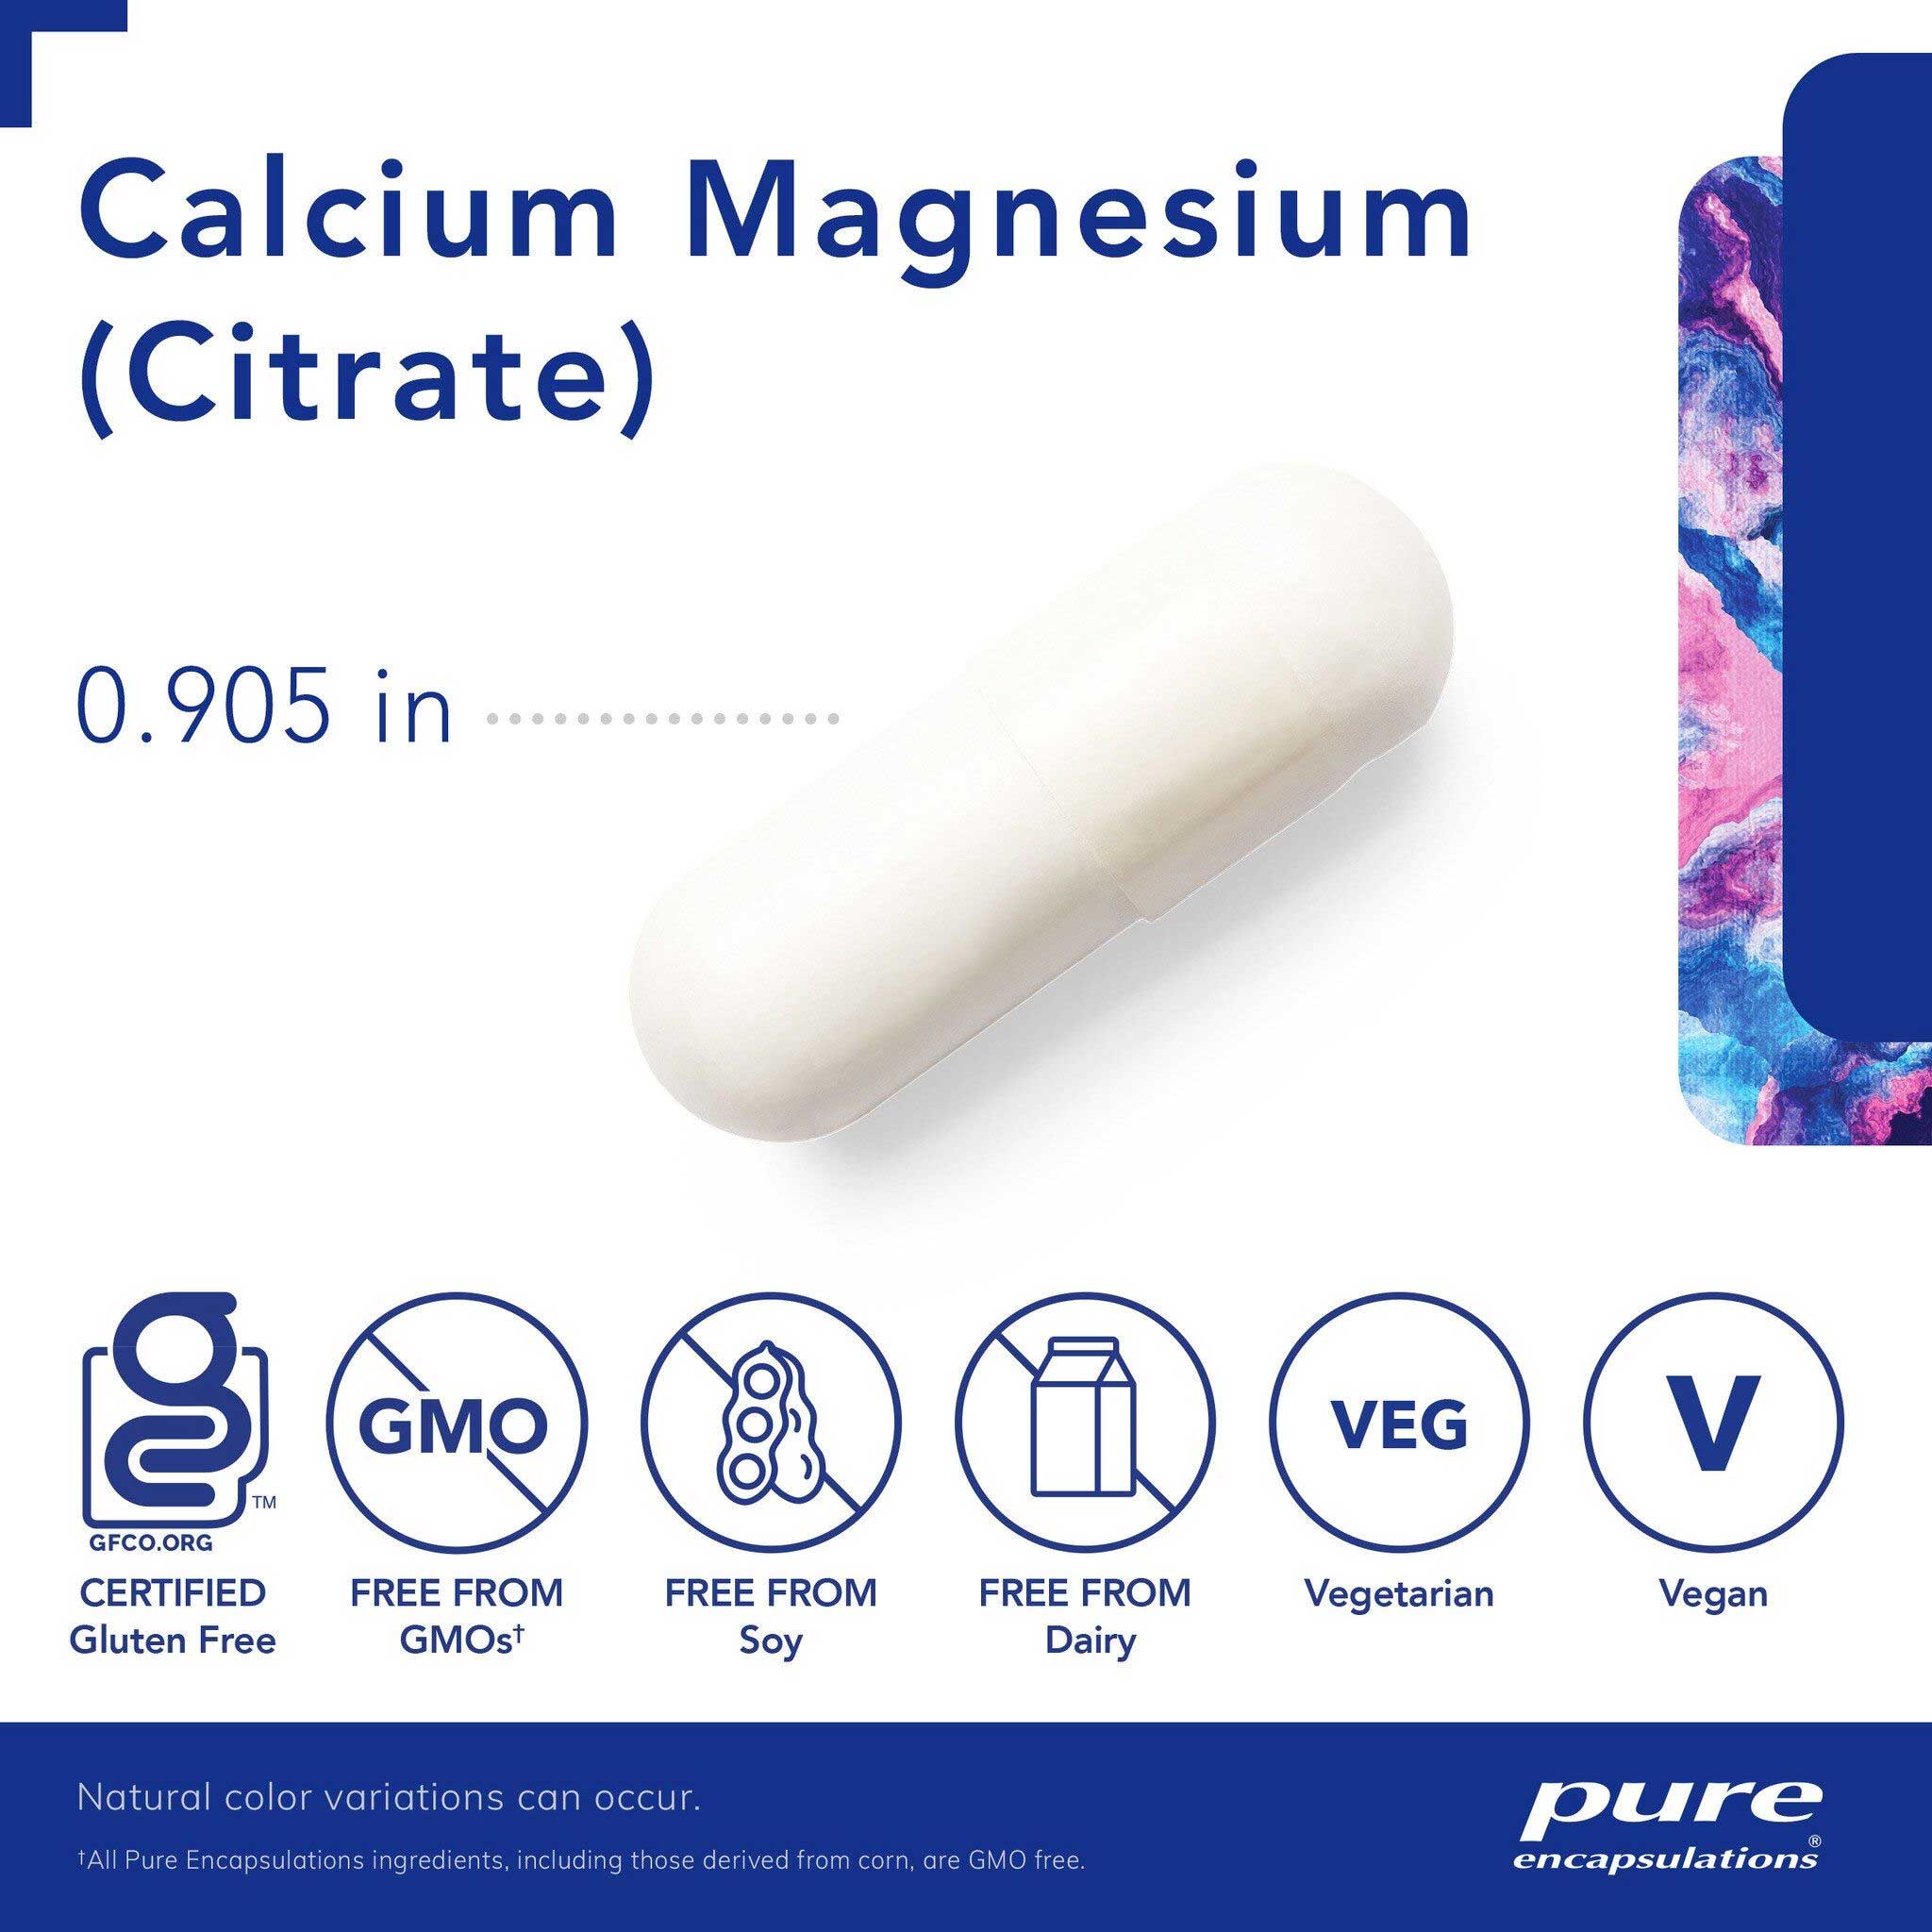 Pure Encapsulations Calcium Magnesium (Citrate) Capsules